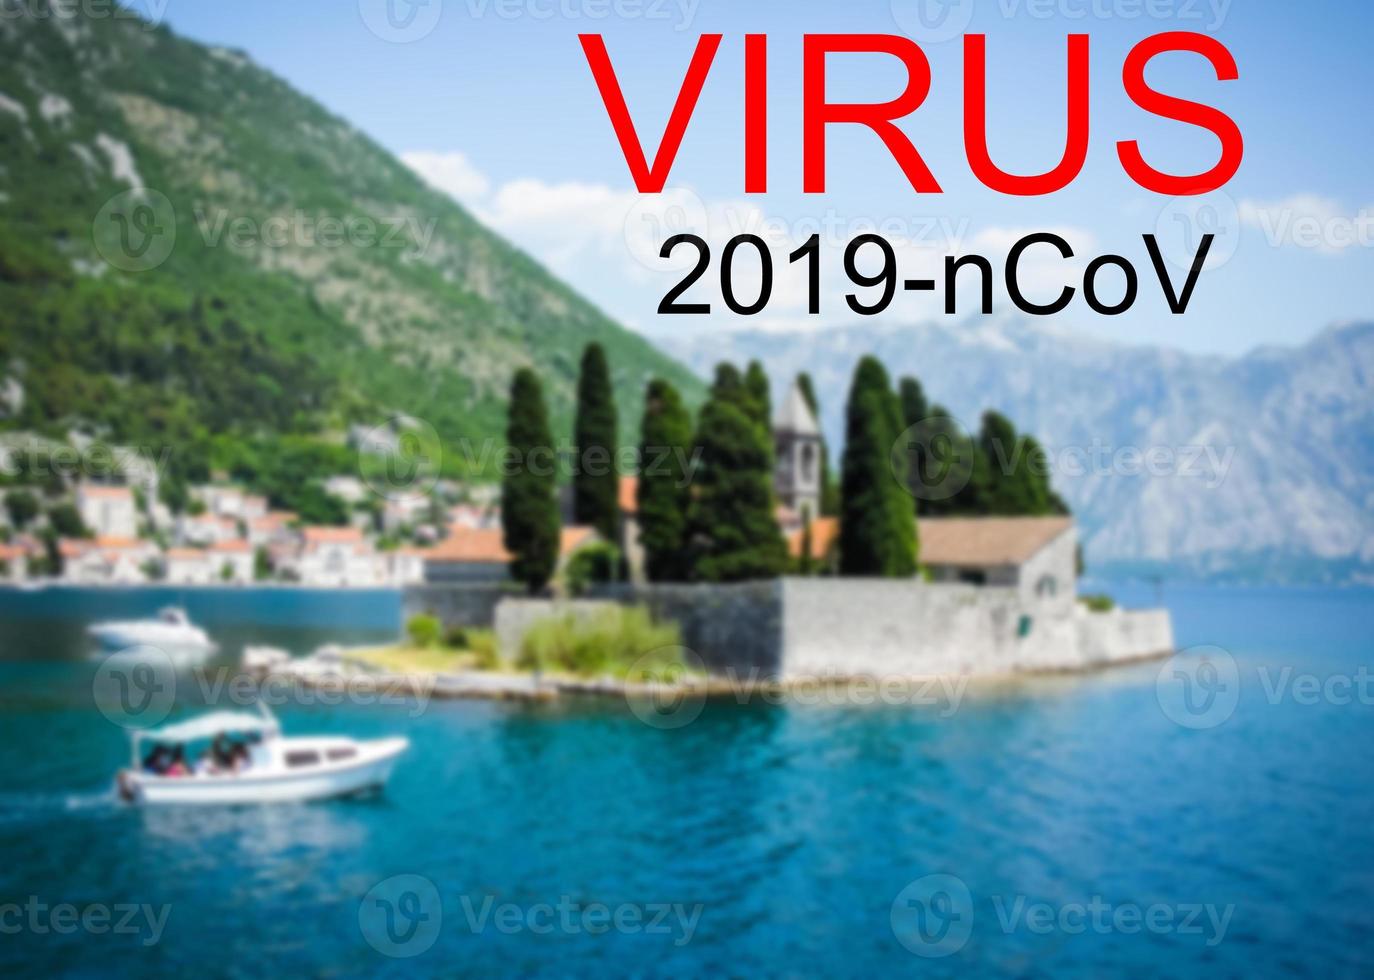 Montenegro en coronavirus 2019-ncov alarm teken. concept van hoog waarschijnlijkheid van roman coronavirus het uitbreken door op reis toeristen foto